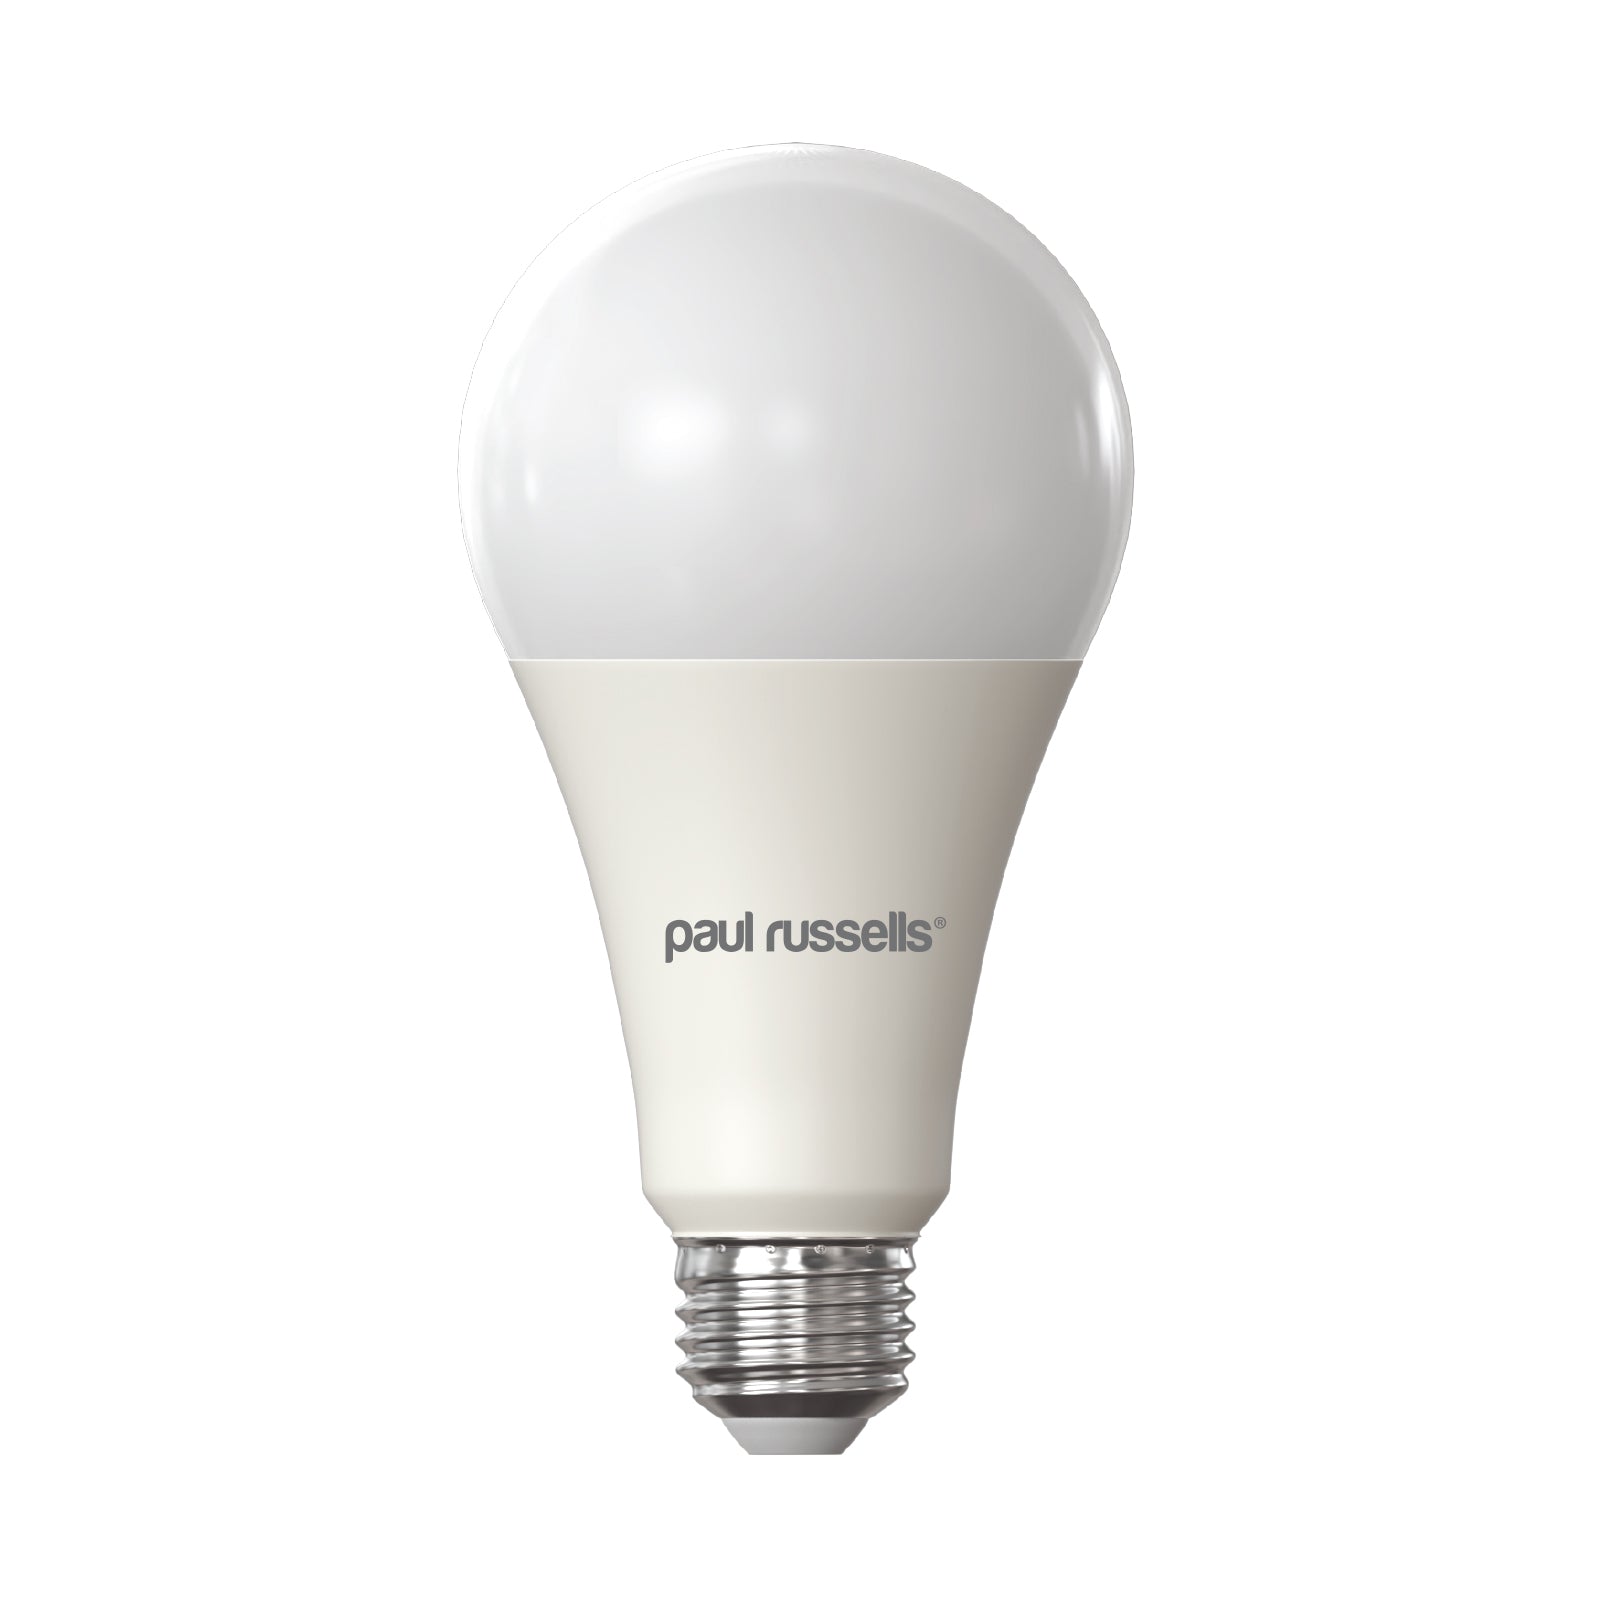 LED GLS 16W (120w), ES/E27, 1901 Lumens, Warm White(3000K), 240V